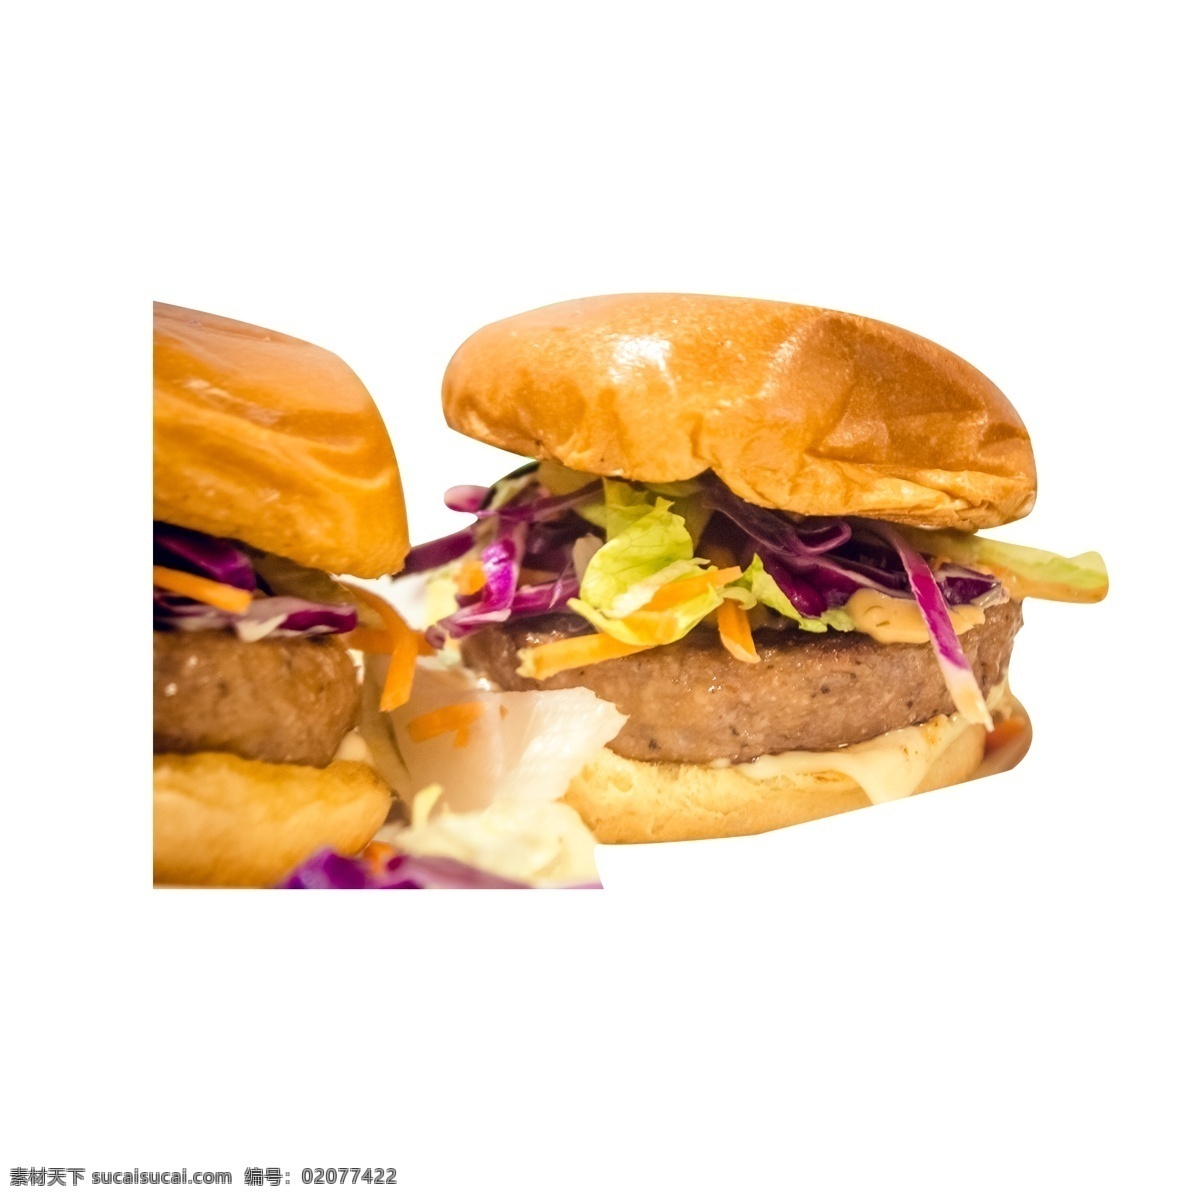 两个 美味 汉堡包 双层汉堡 汉堡 牛肉汉堡 牛肉汉堡包 美味的 食品 快餐 满足 芝麻汉堡